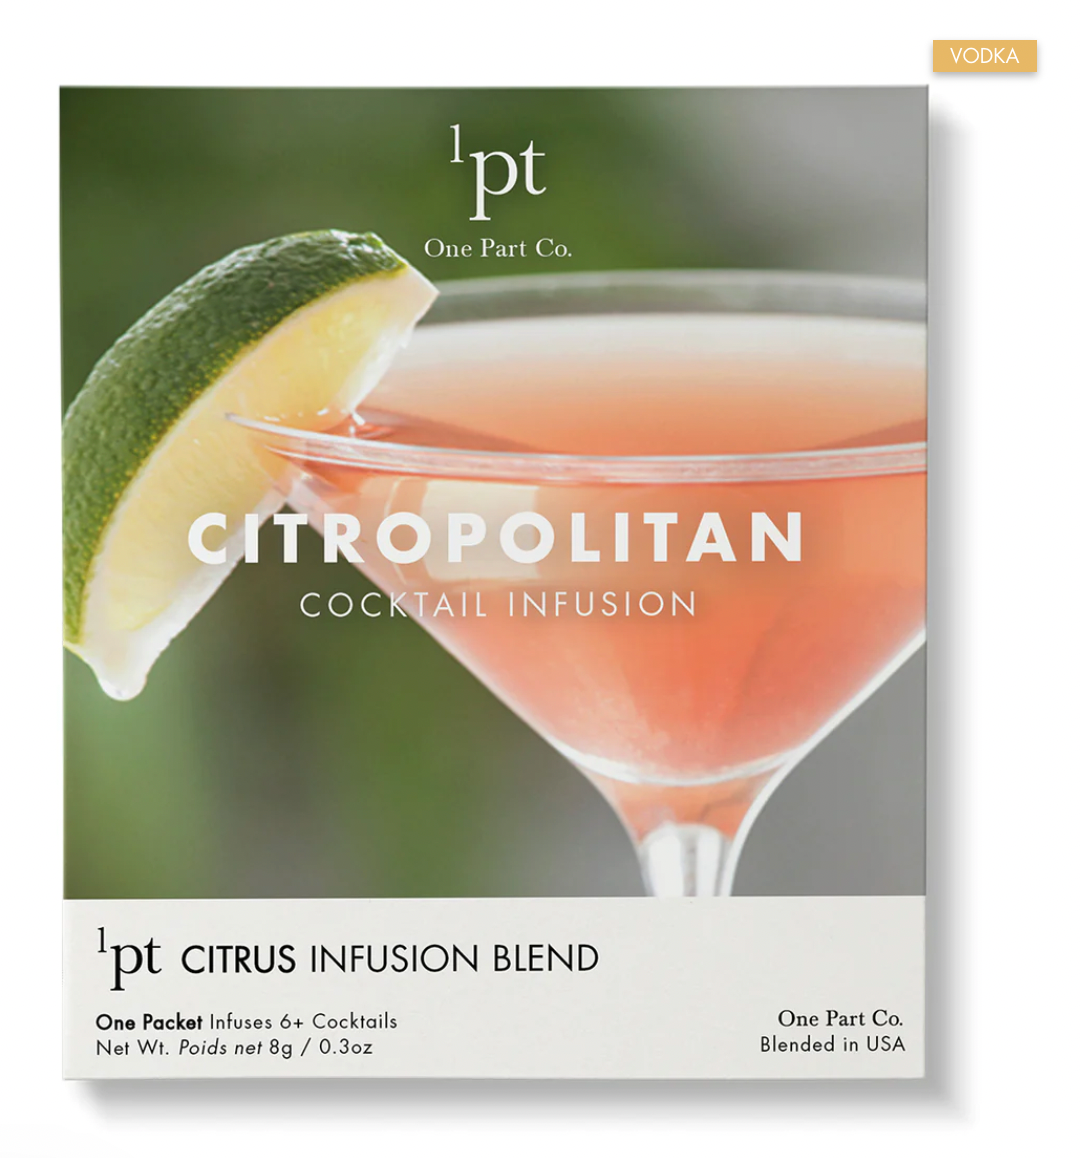 1pt One Part Co. Citropolitan Cocktail/Mocktail Infusion